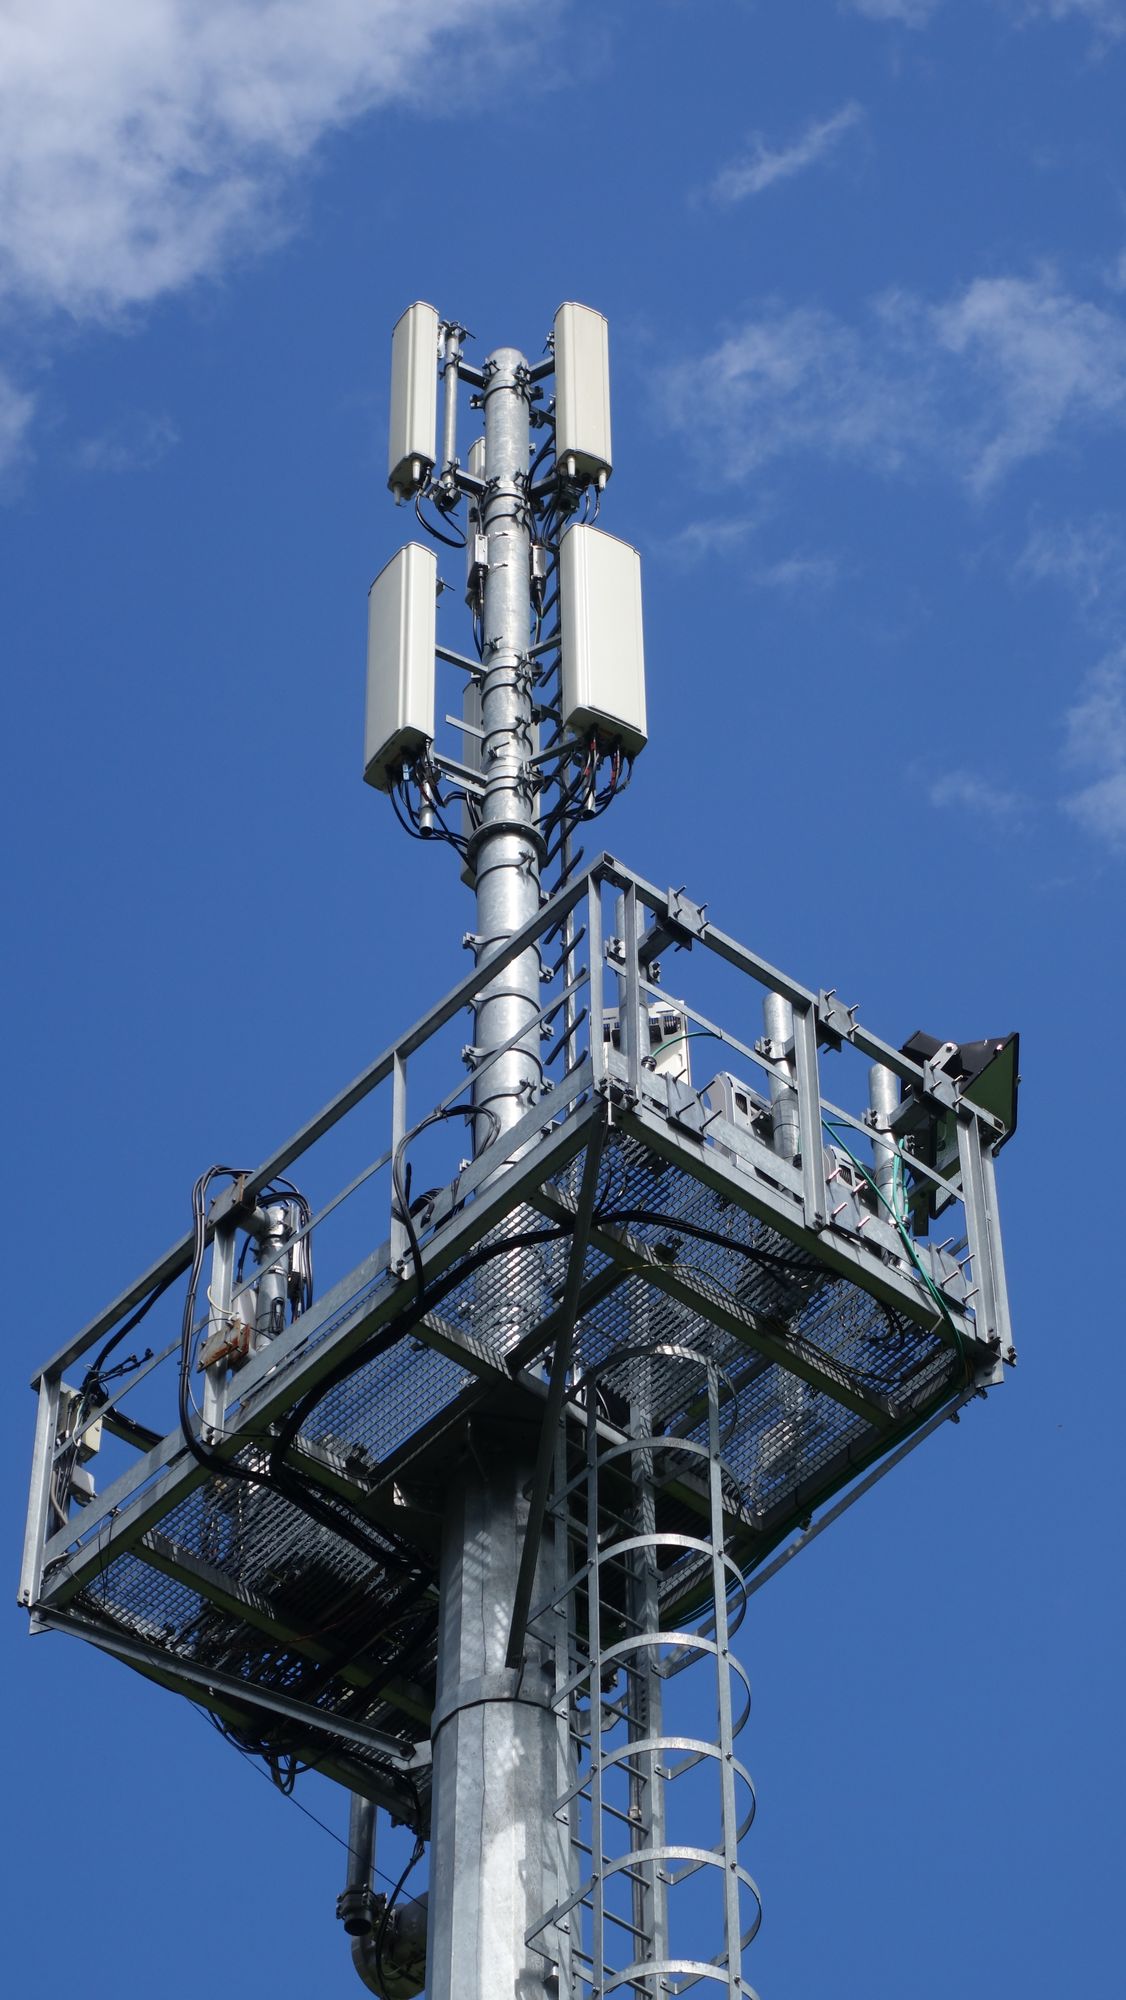 Die Antennen von Vodafone und H3G (außer Betrieb) im August 2019